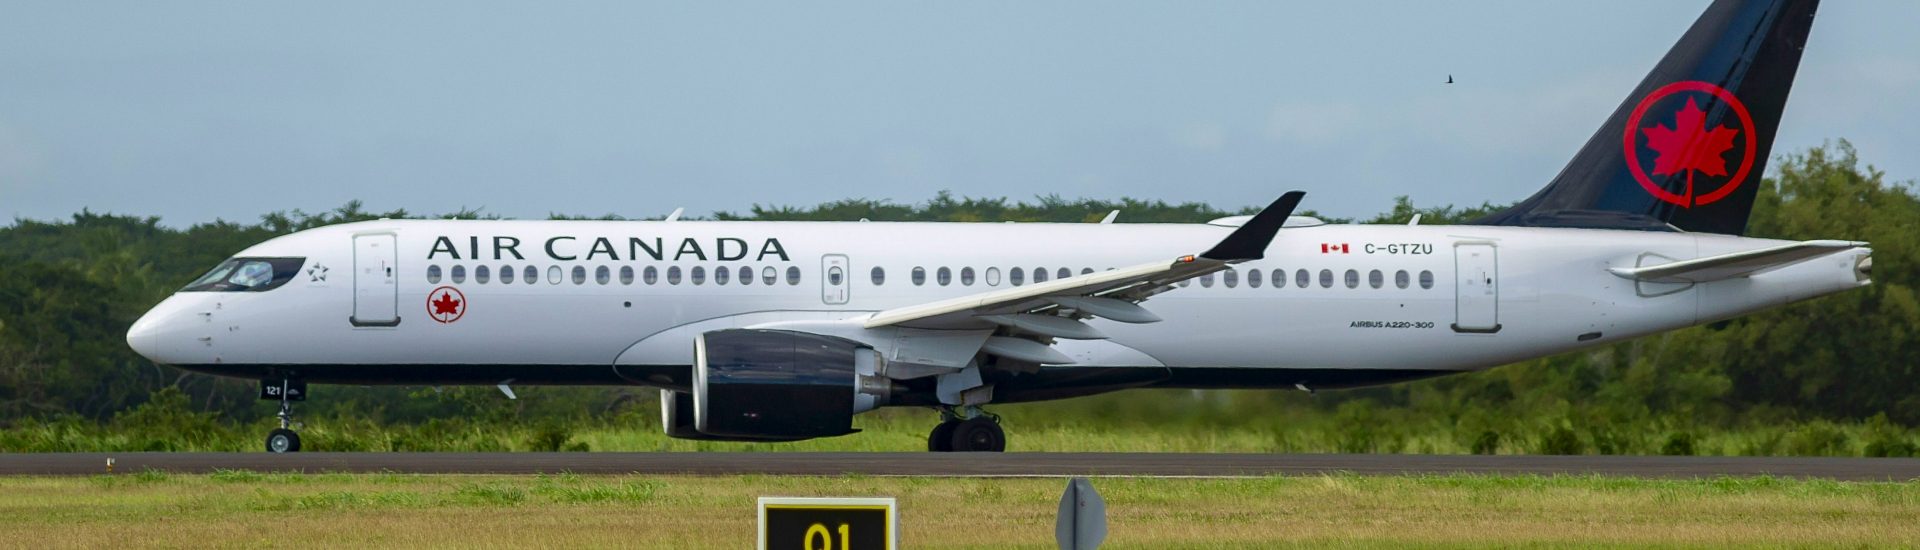 A220-300 Air Canada C-GTZU